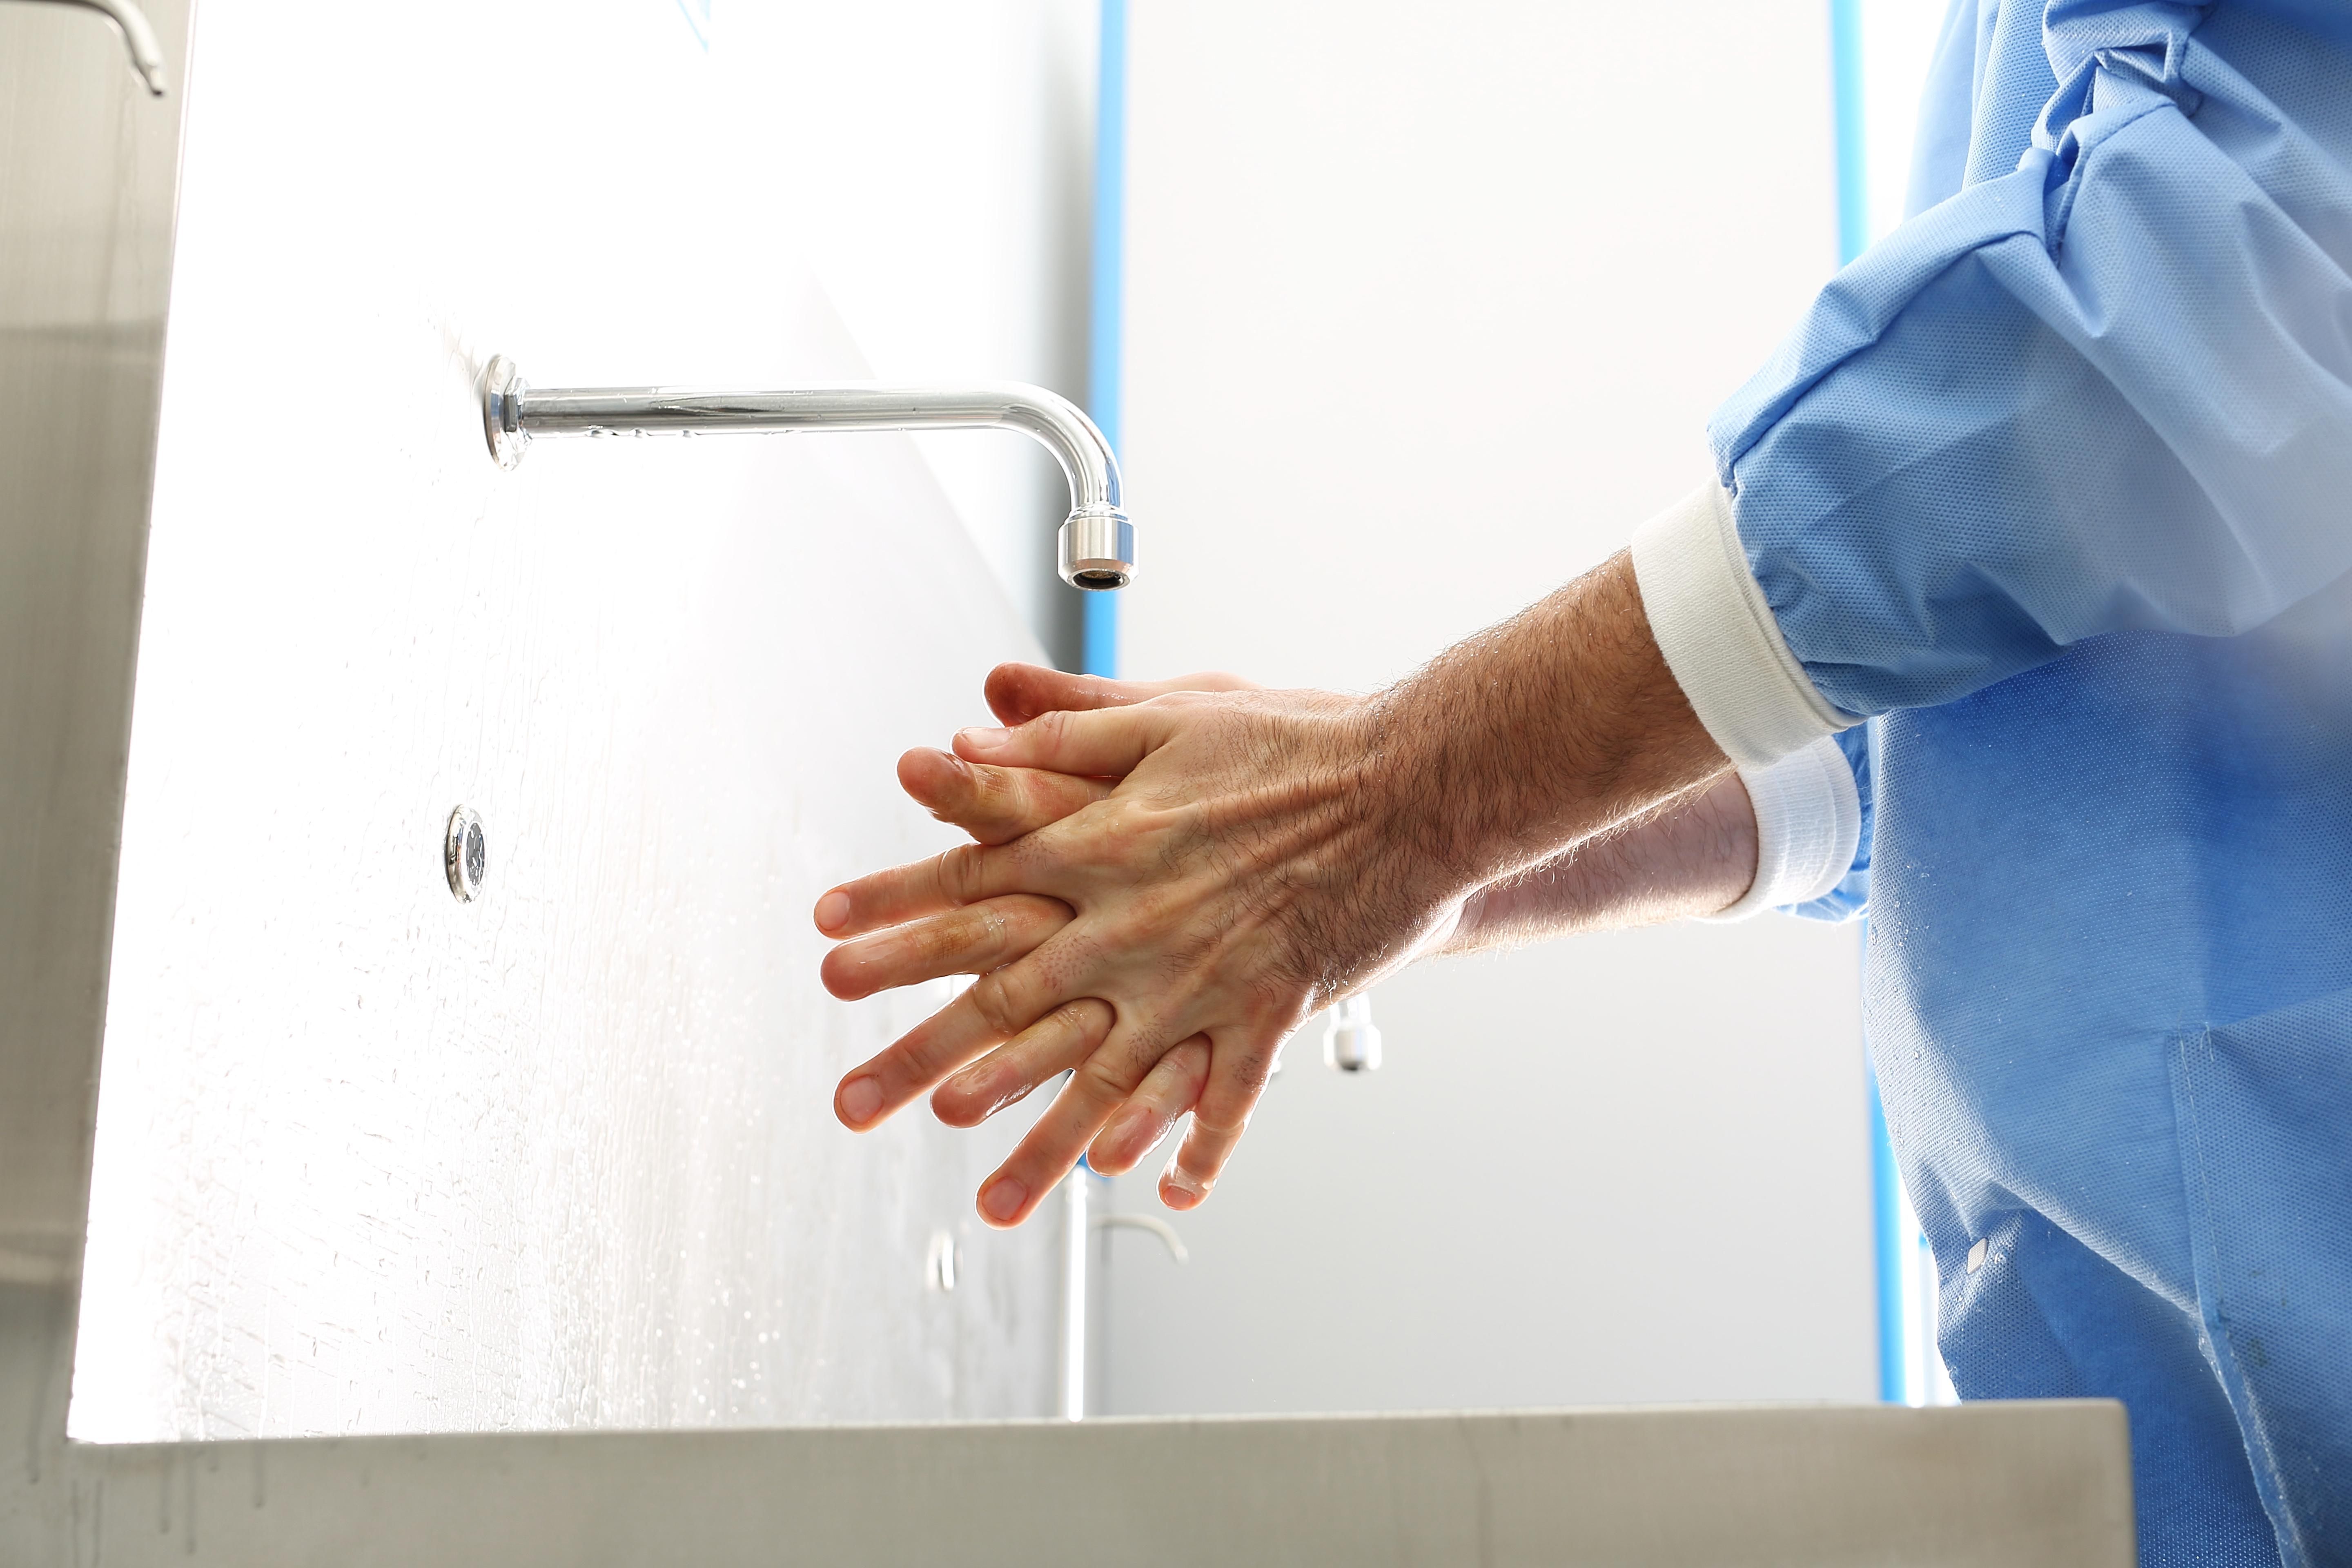 A járványban legalább megtanultunk rendesen kezet mosni